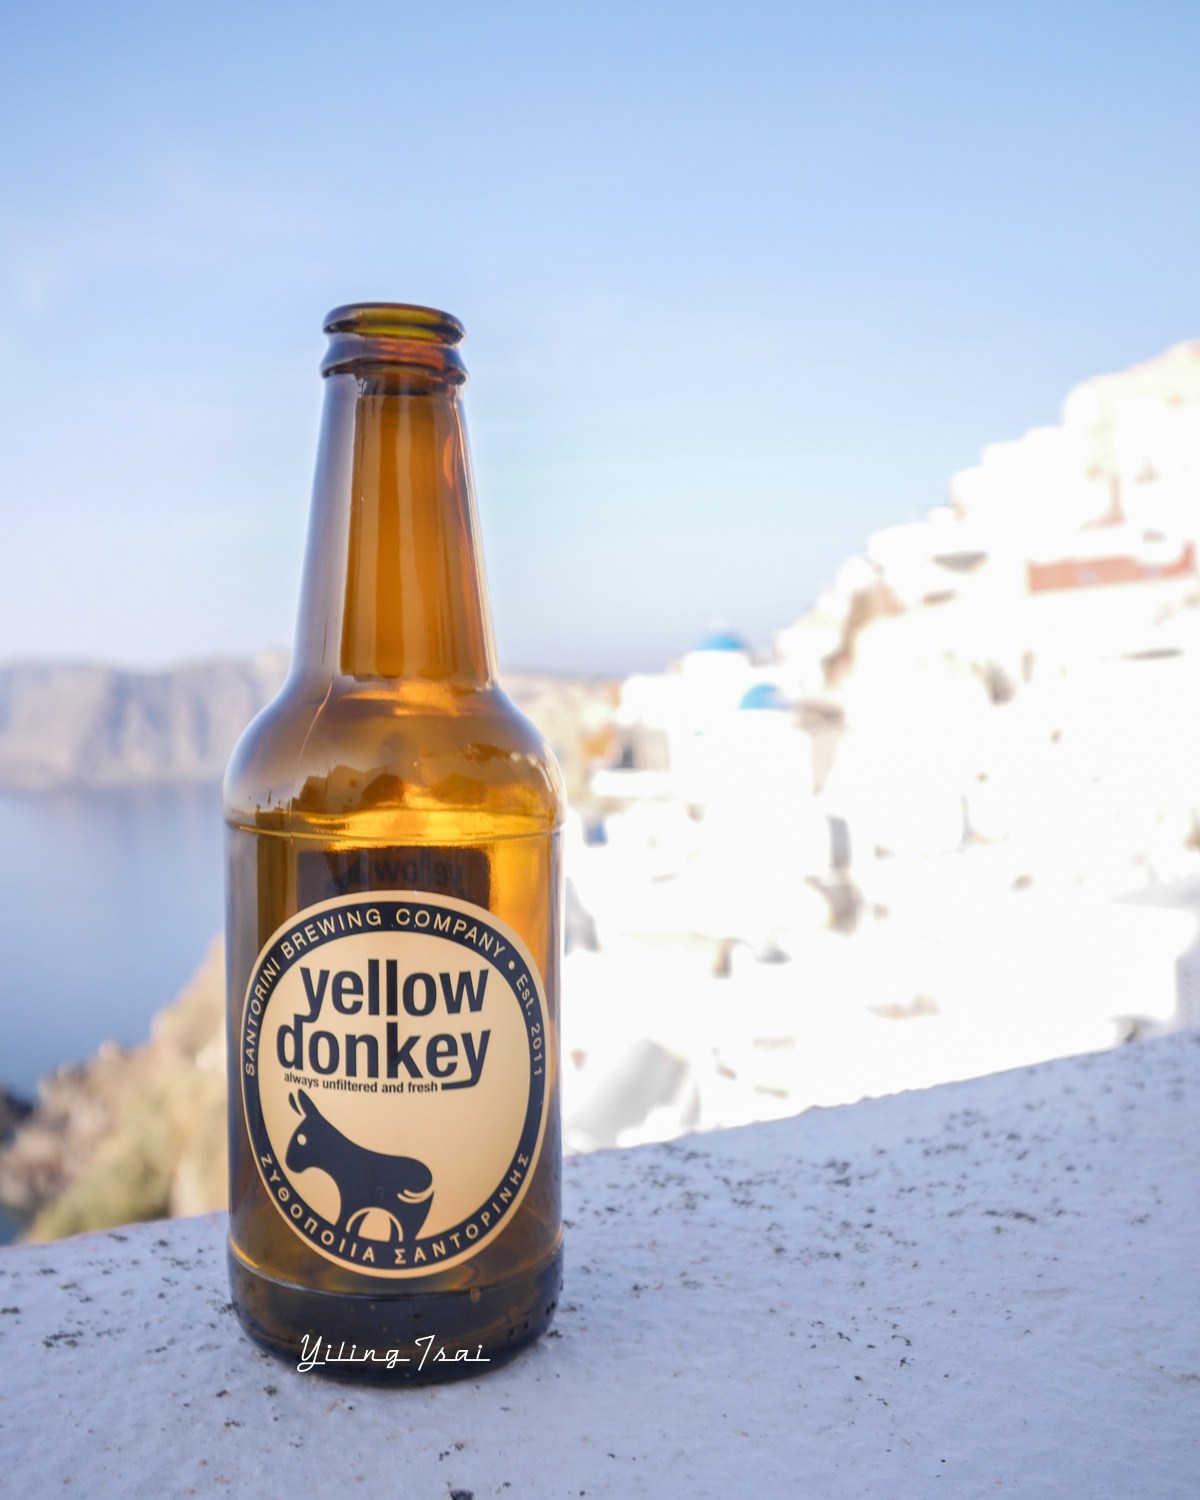 希臘聖托里尼 驢子啤酒廠 donkey beers 聖托里尼必喝